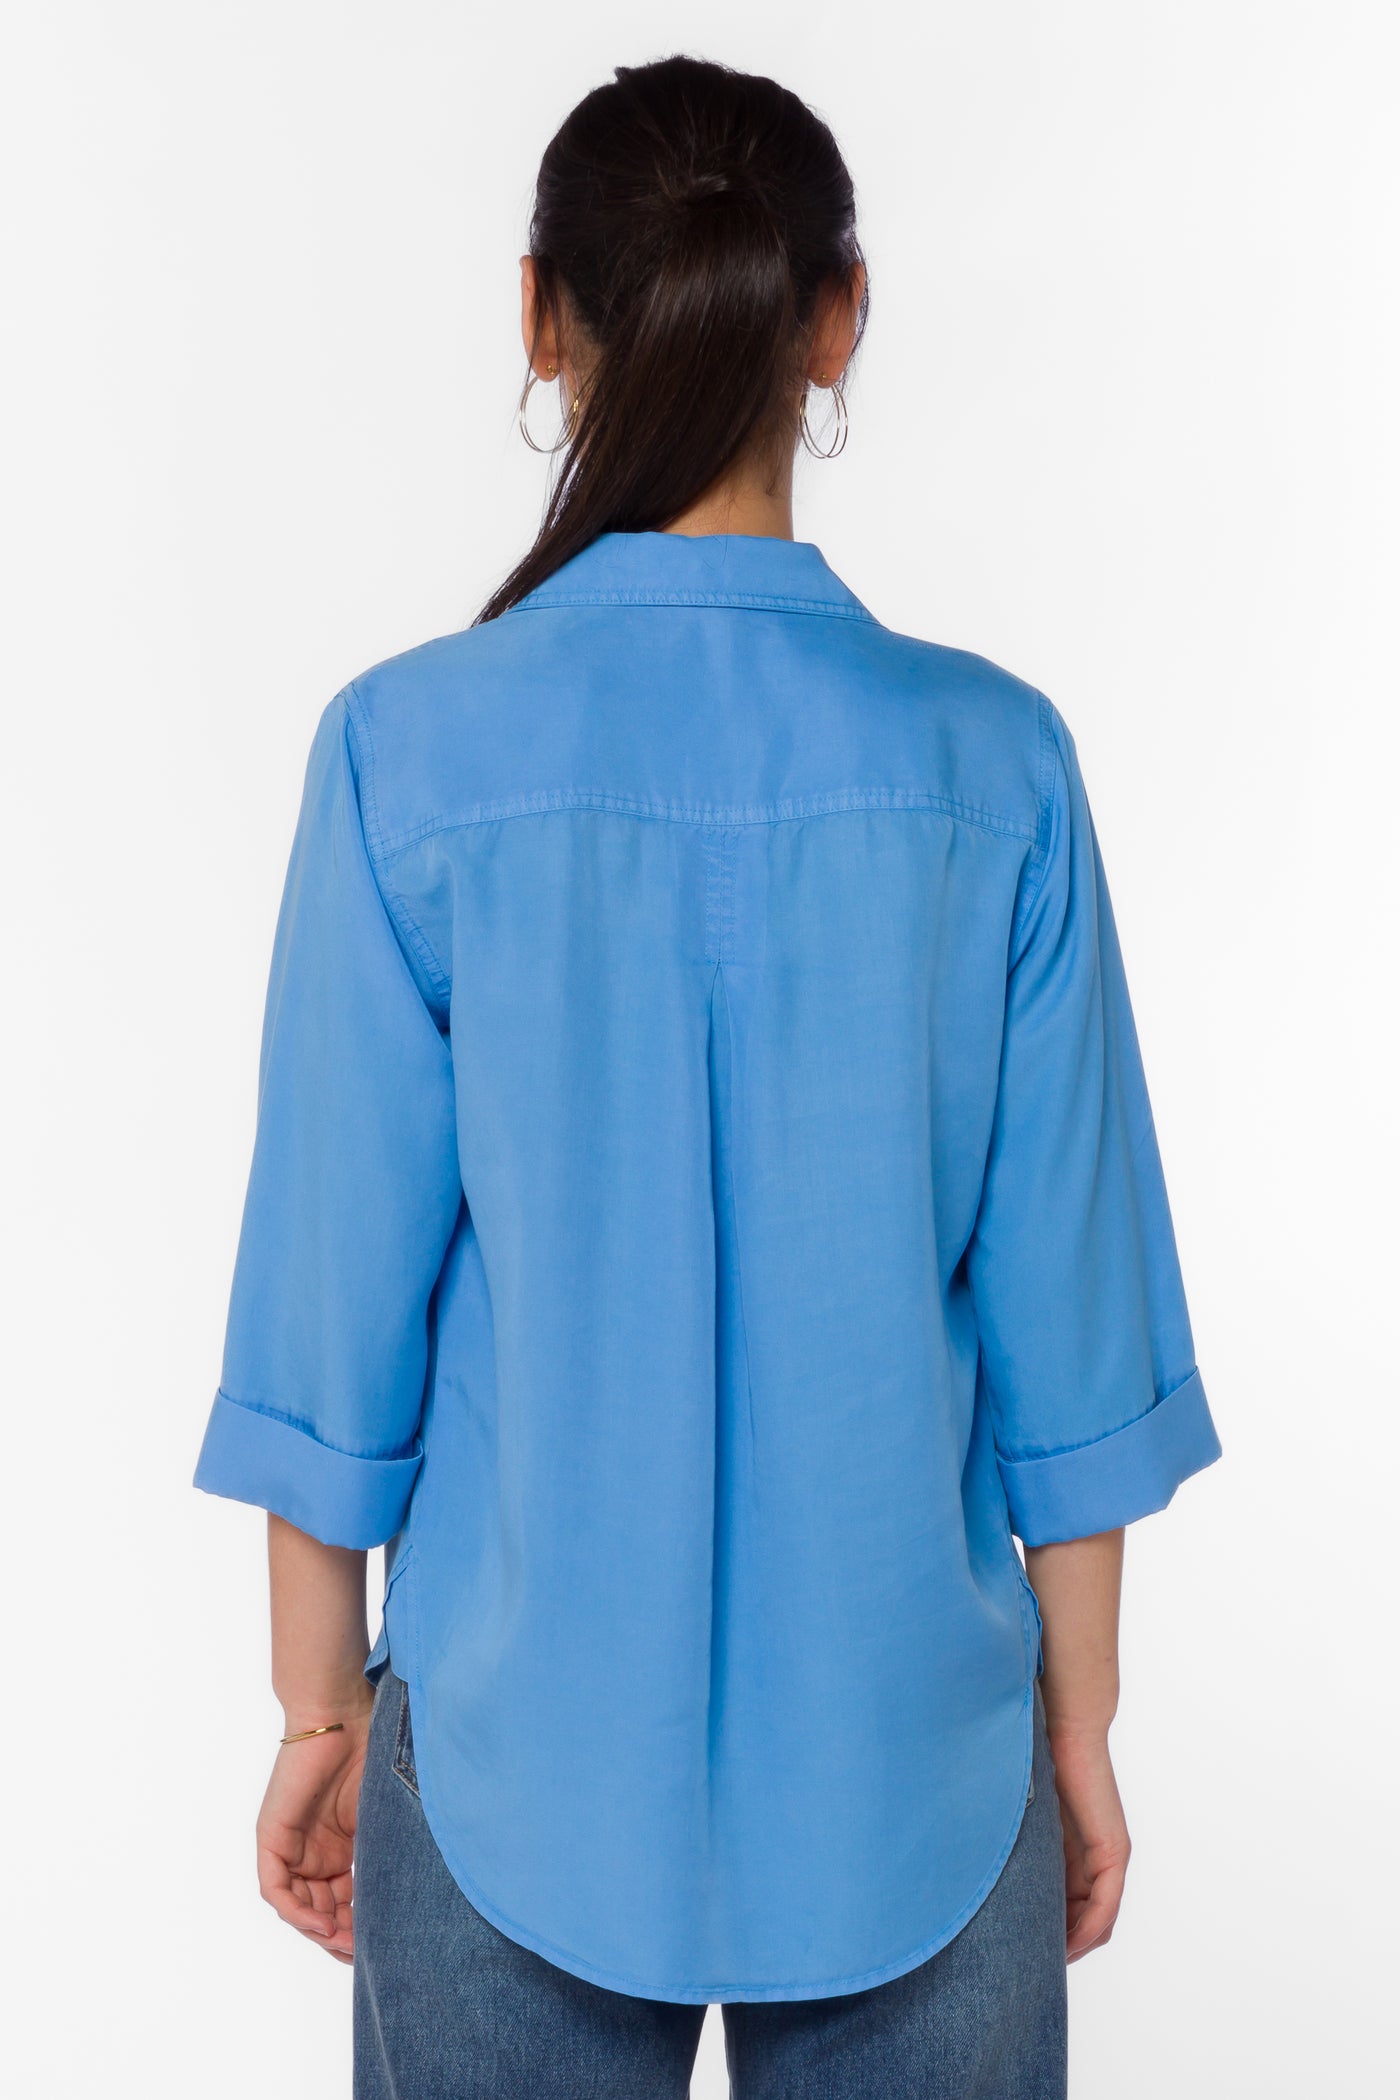 Blake Polar Blue Shirt - Tops - Velvet Heart Clothing